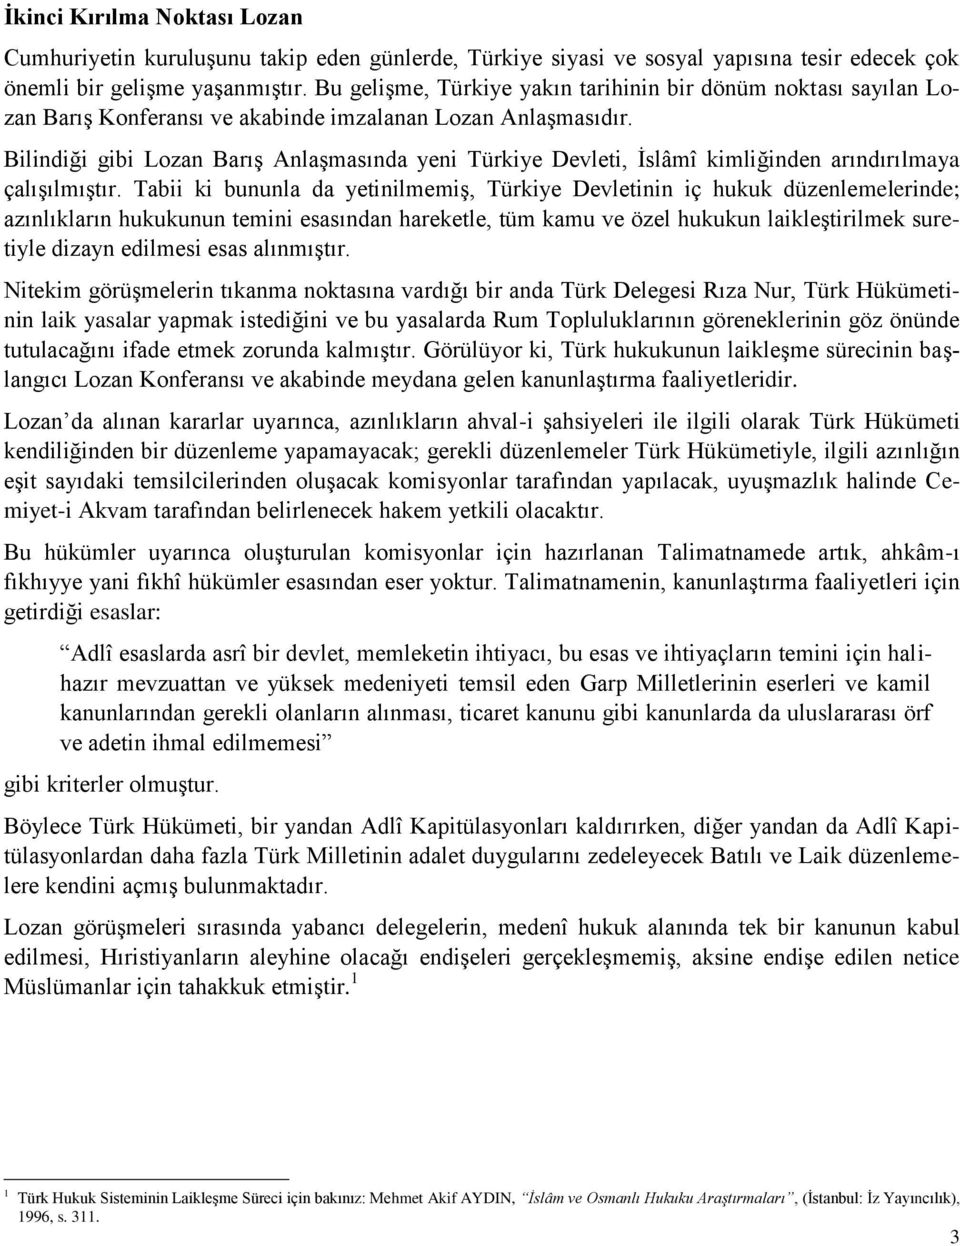 Bilindiği gibi Lozan Barış Anlaşmasında yeni Türkiye Devleti, İslâmî kimliğinden arındırılmaya çalışılmıştır.